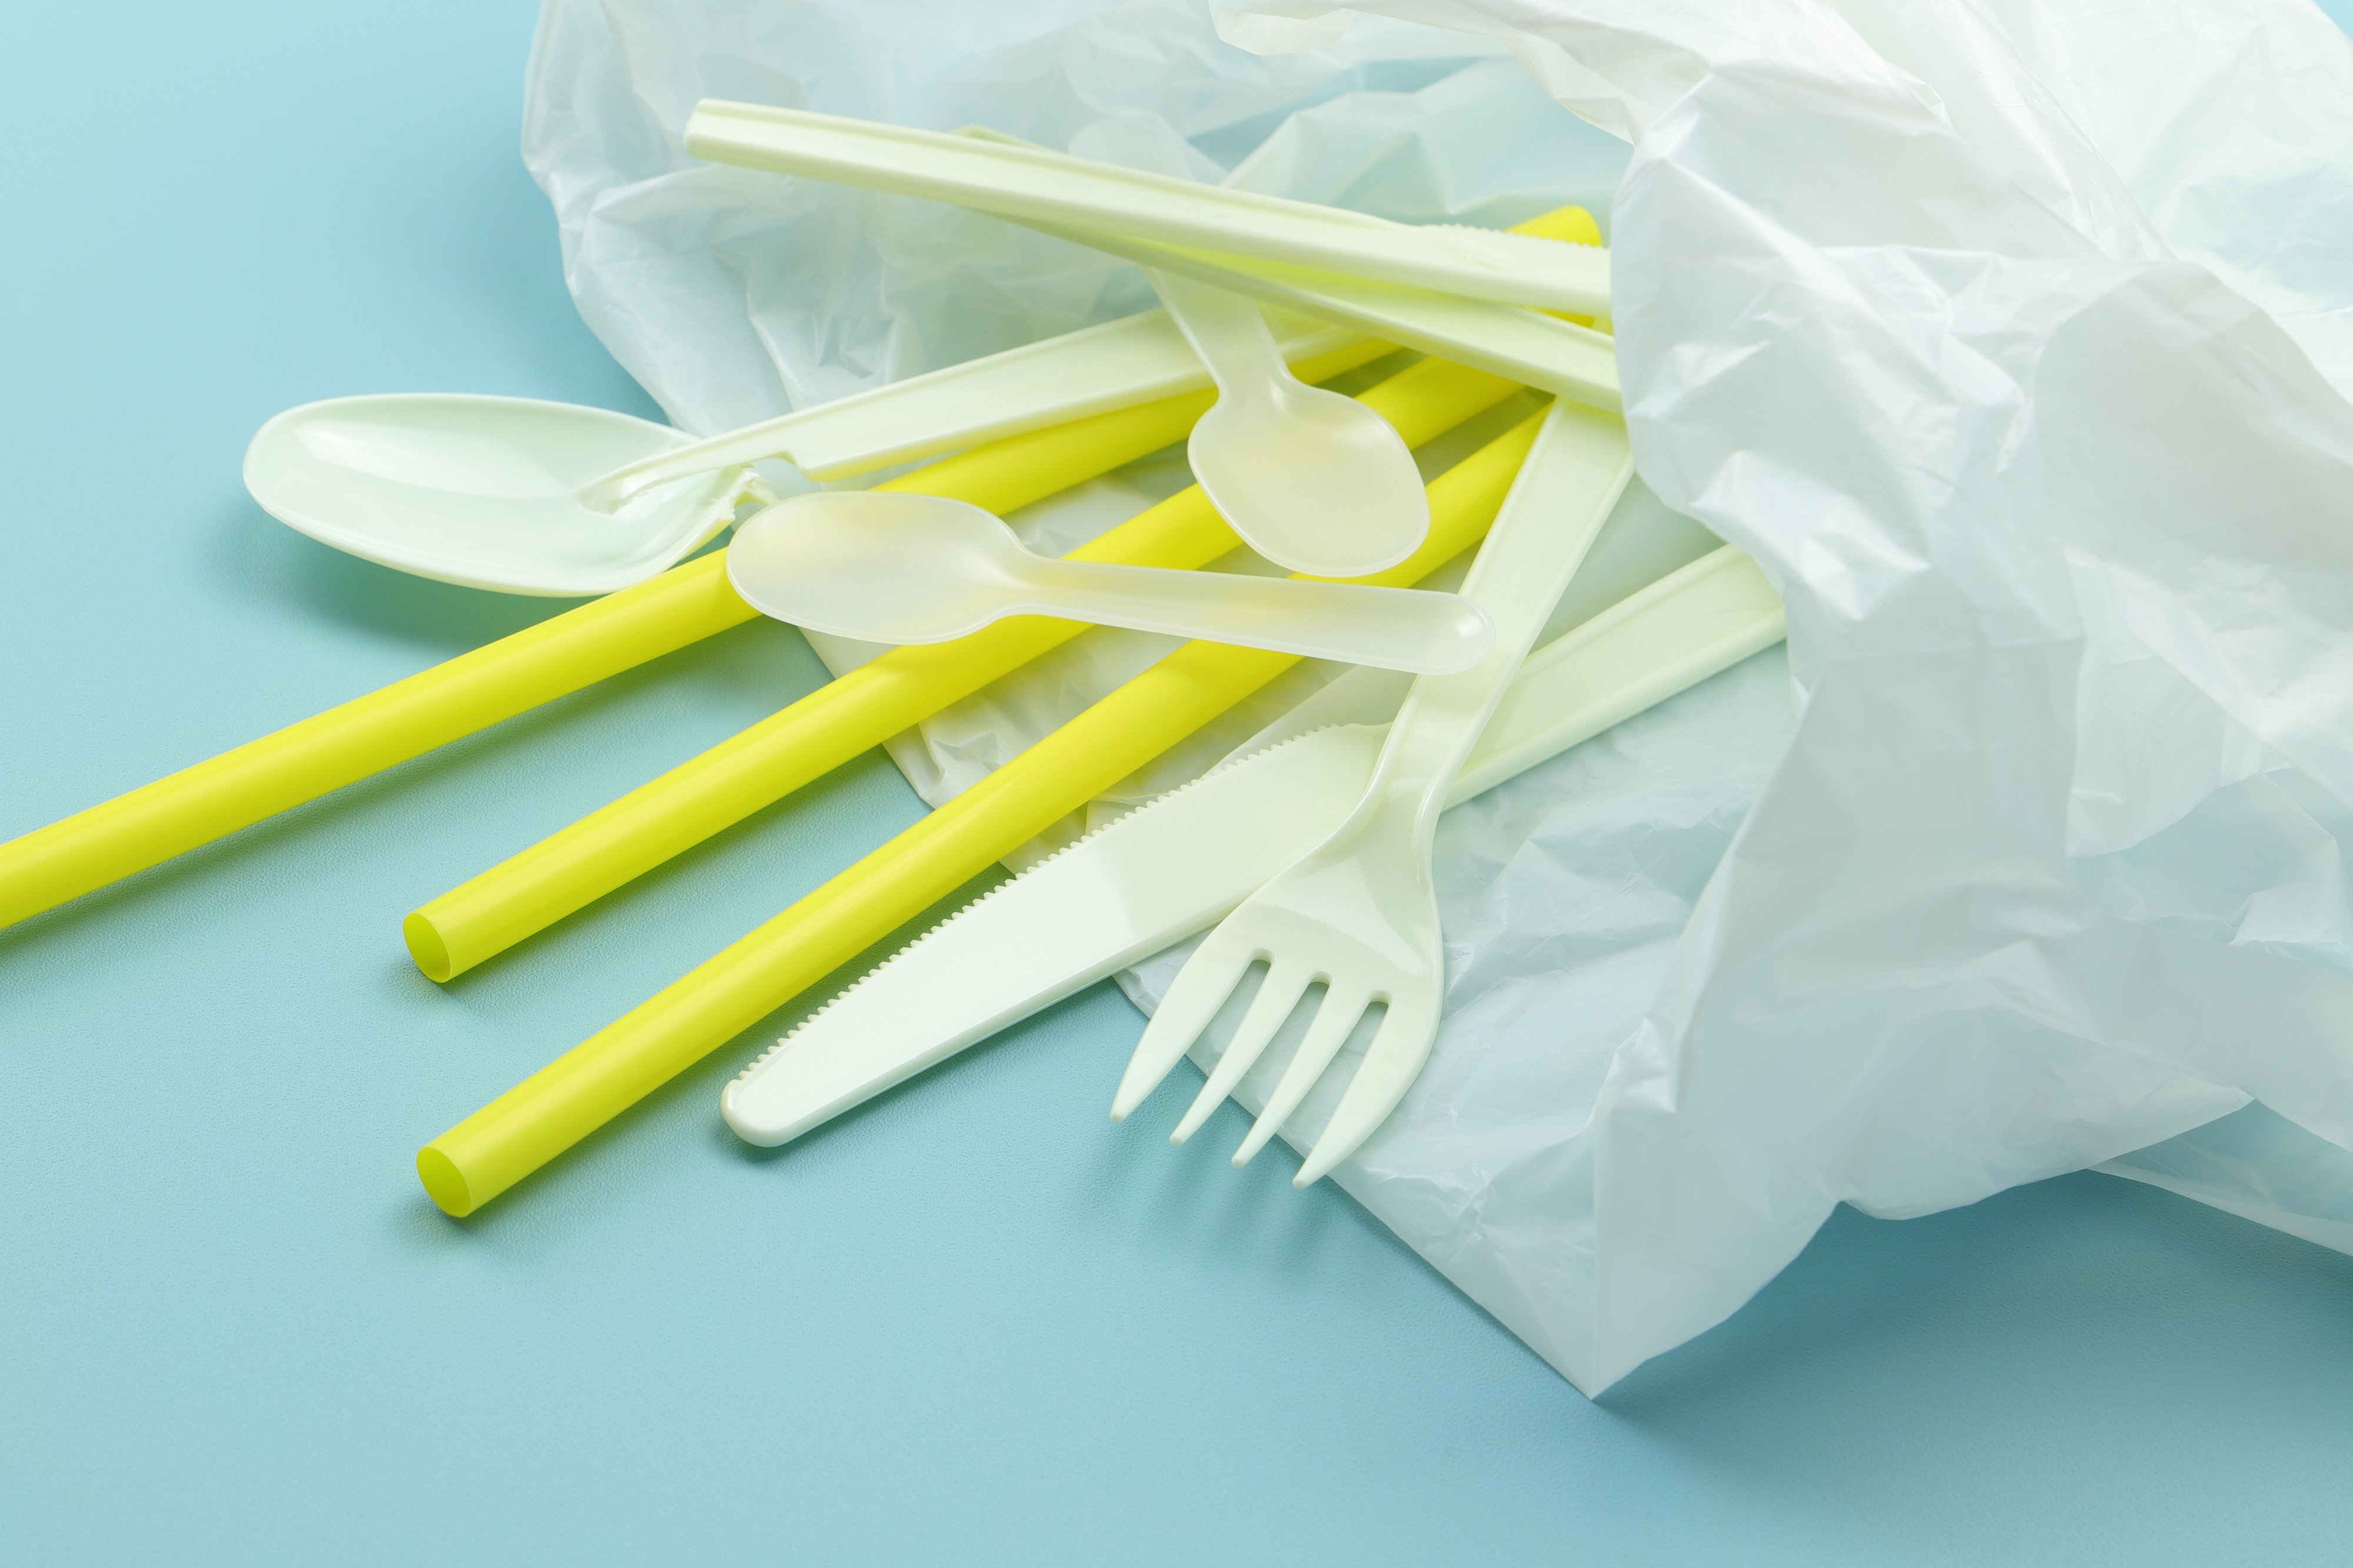 2.キッチンの生ゴミ処理方法②：使い捨てのビニール袋や紙袋を使う